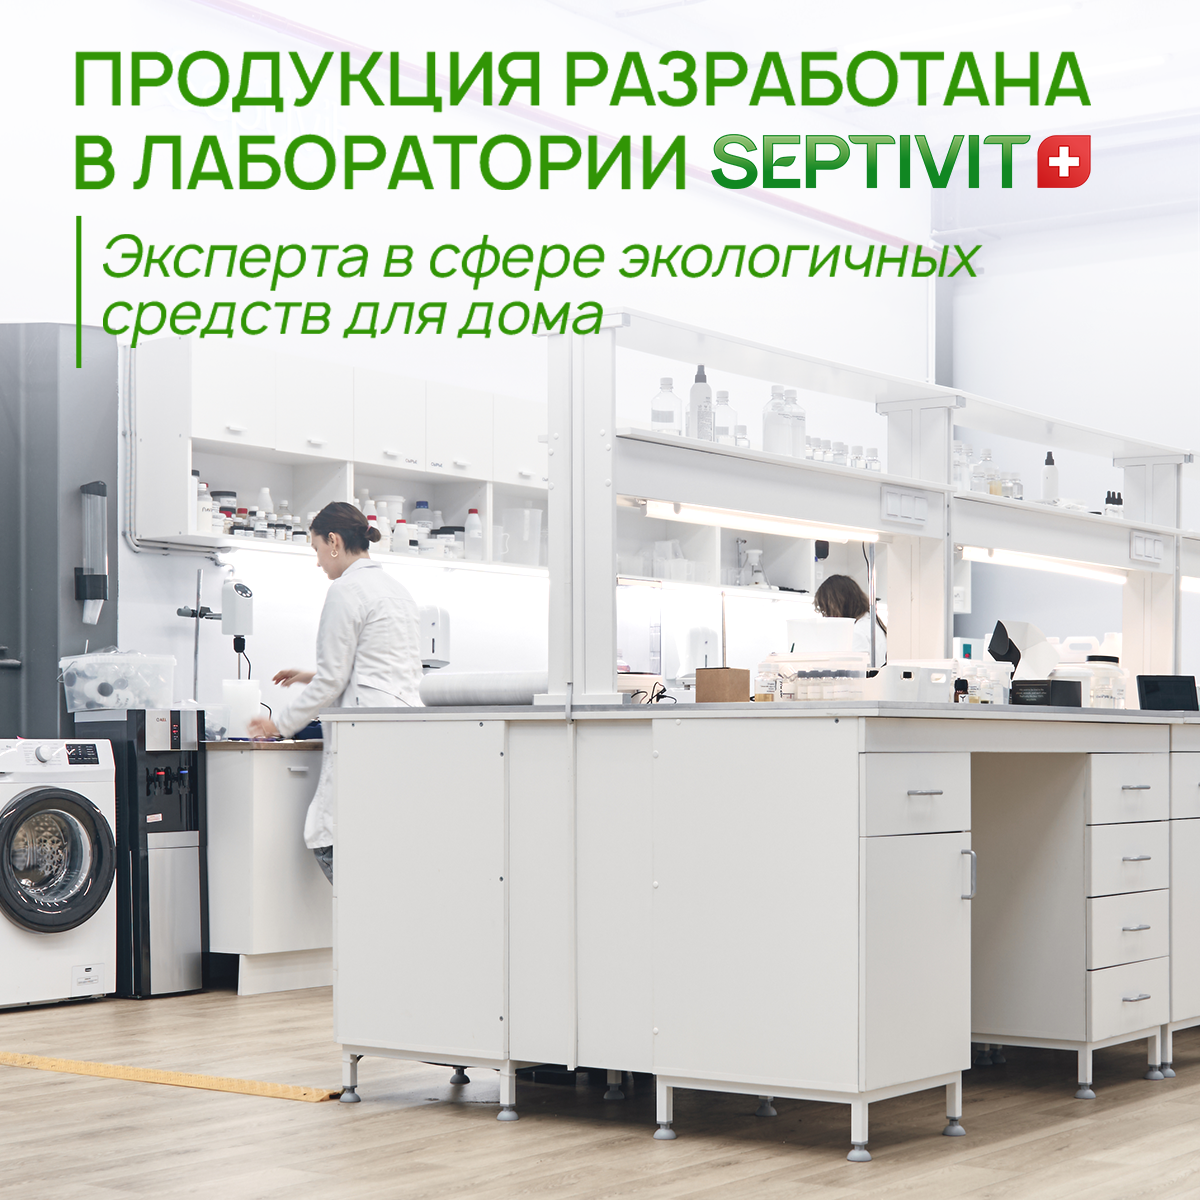 Средство для мытья посуды SEPTIVIT Premium Ледяной лайм 5л - фото 8